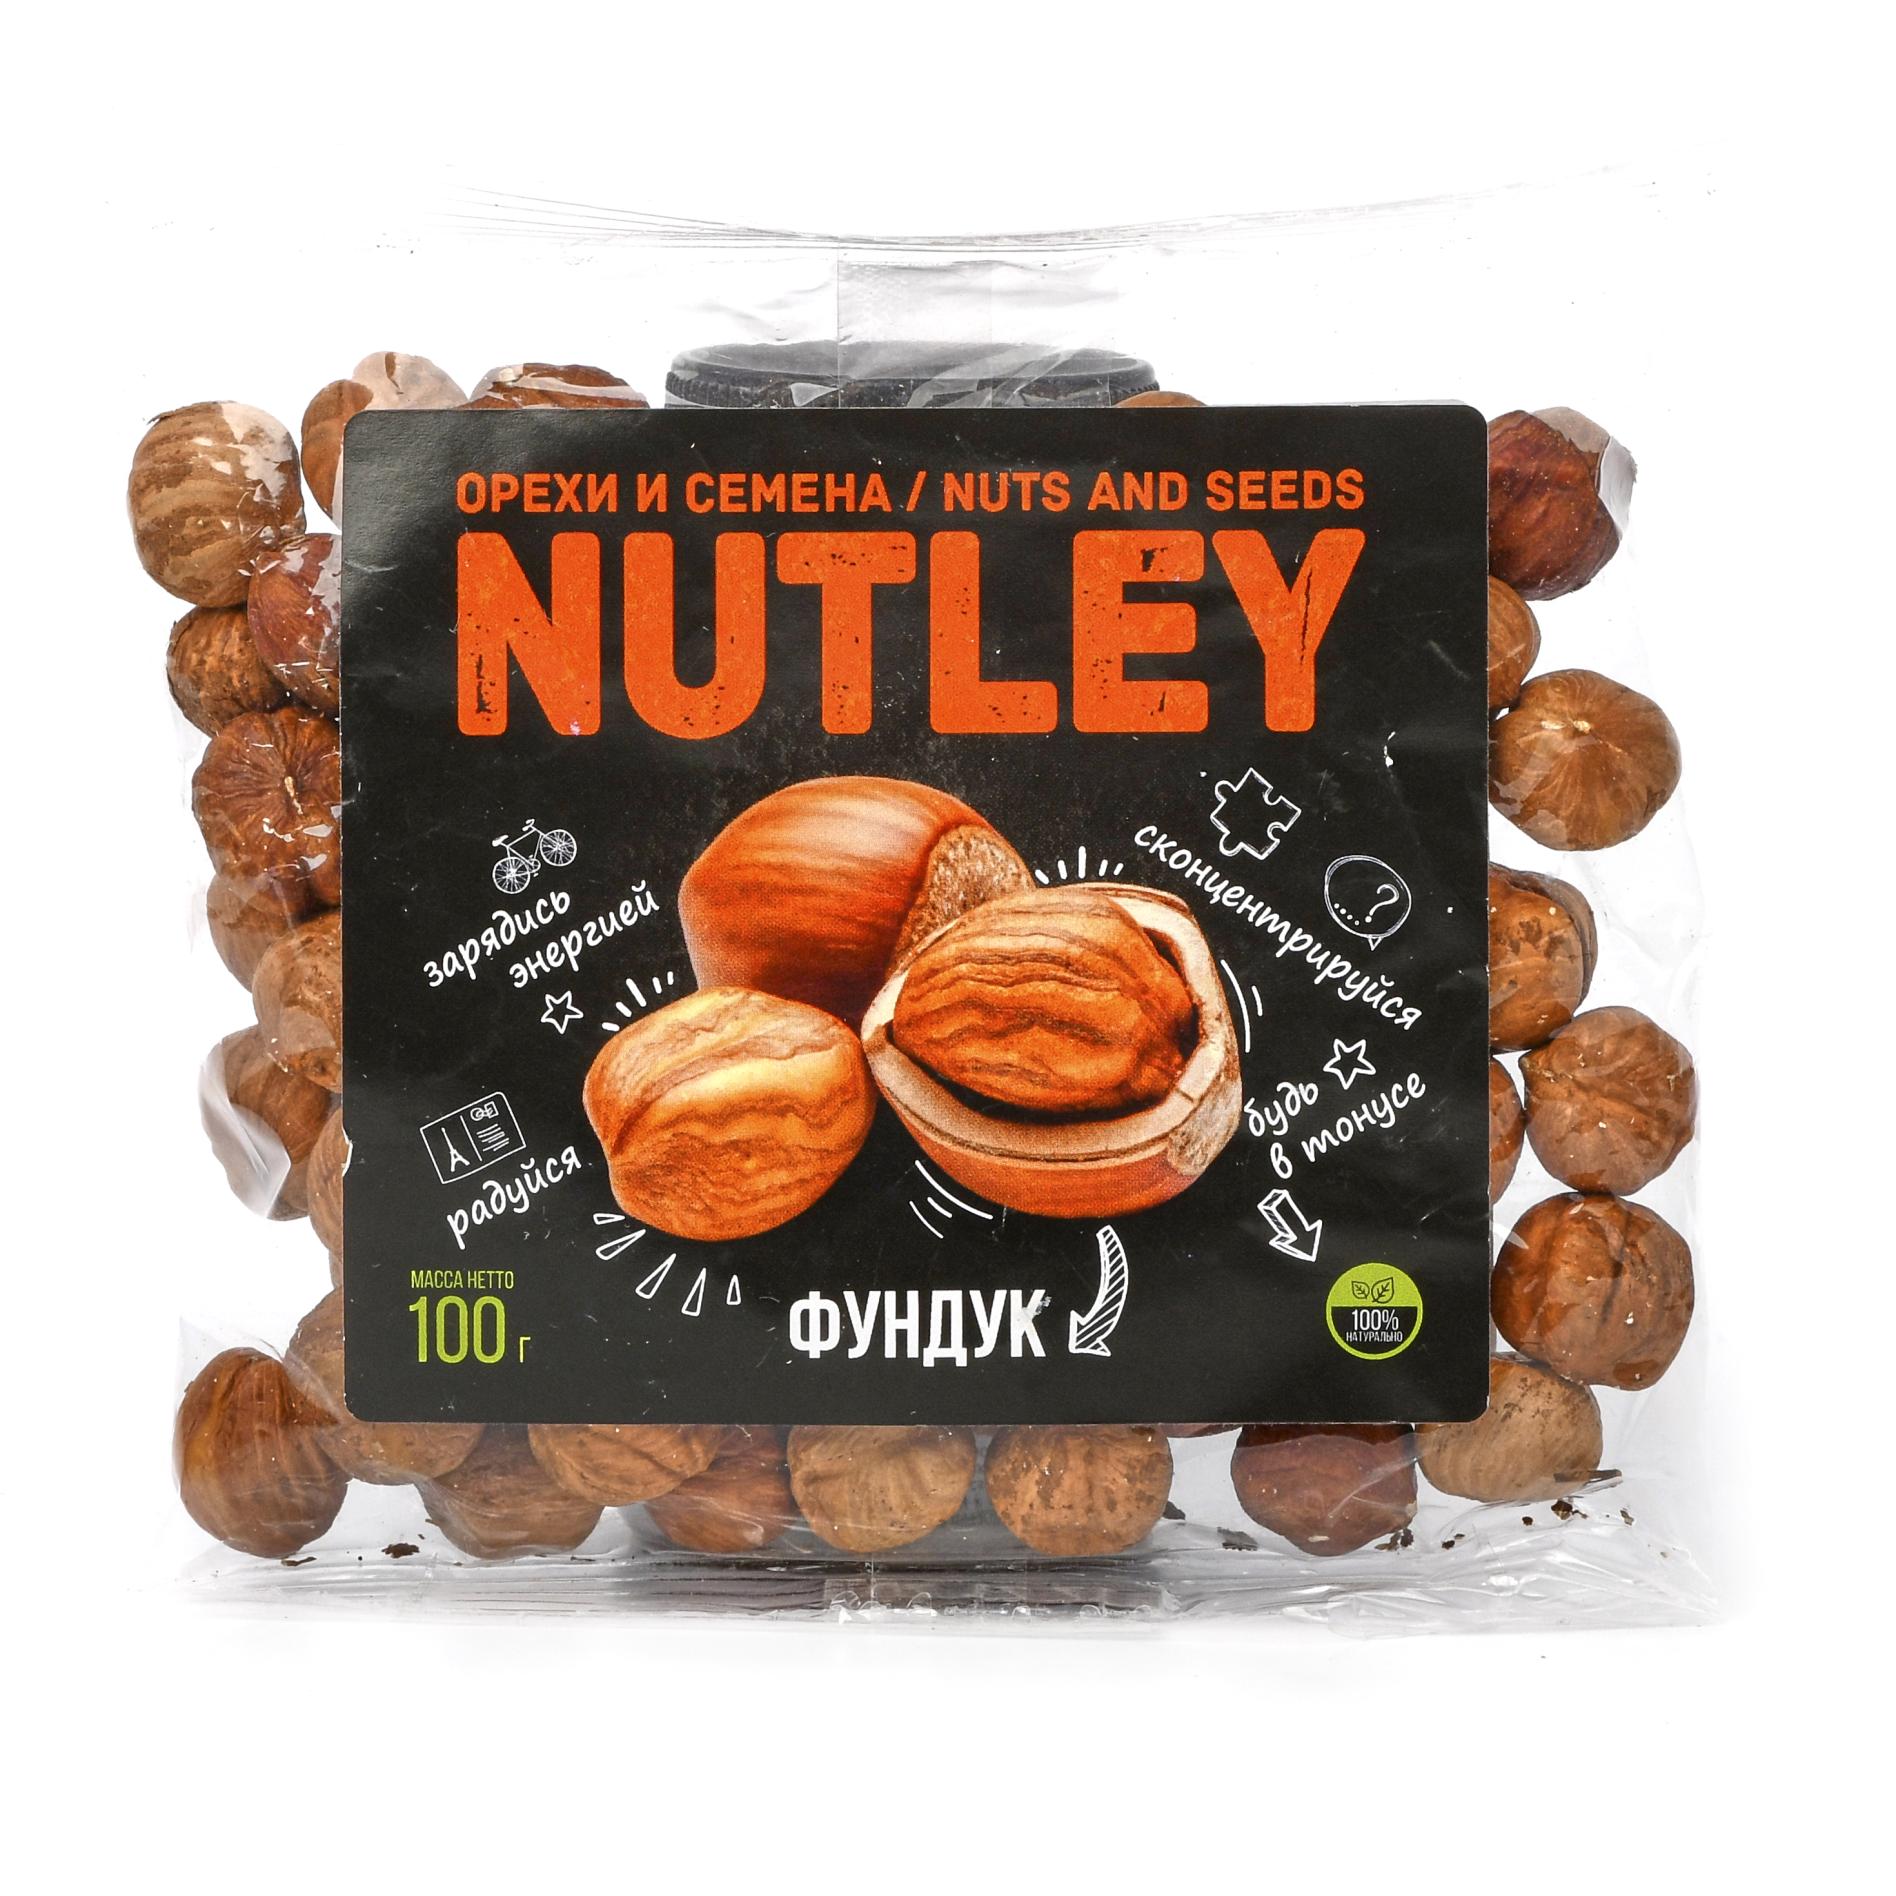 Орехи фасованные Фундук, Nutley - 100 г